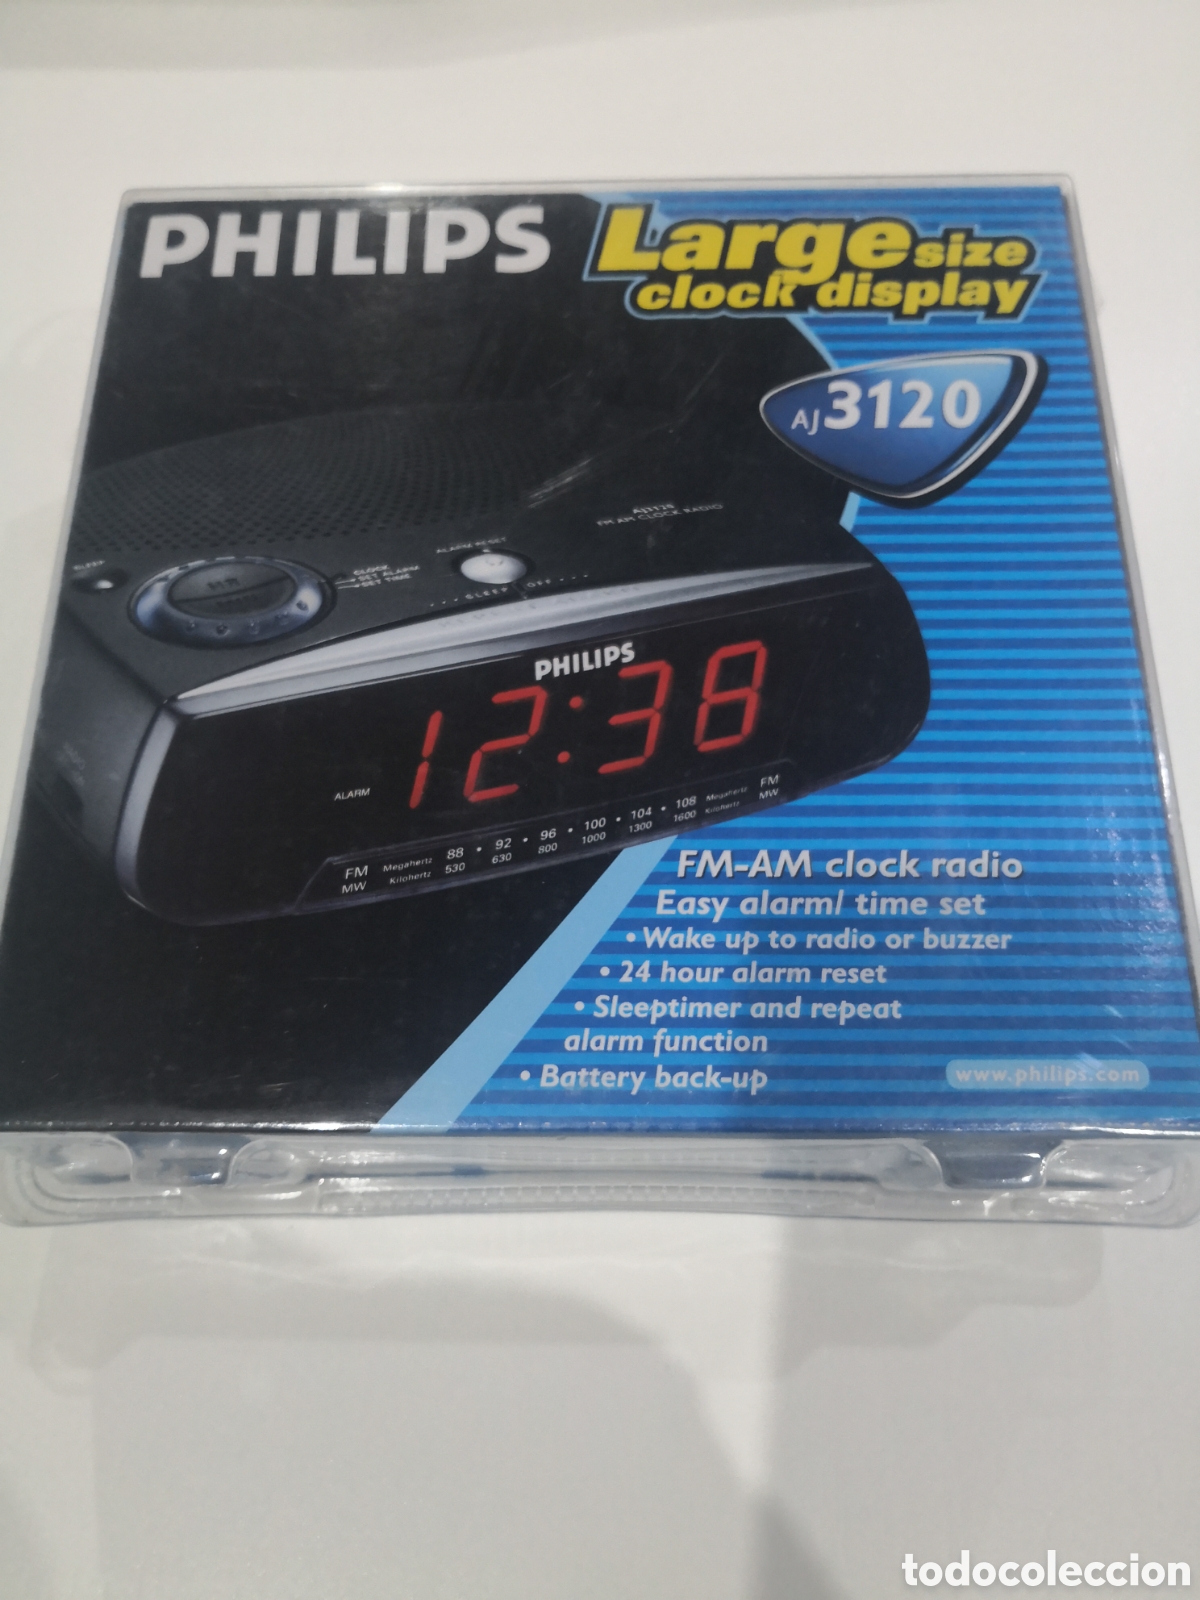 radio despertador philips - Compra venta en todocoleccion